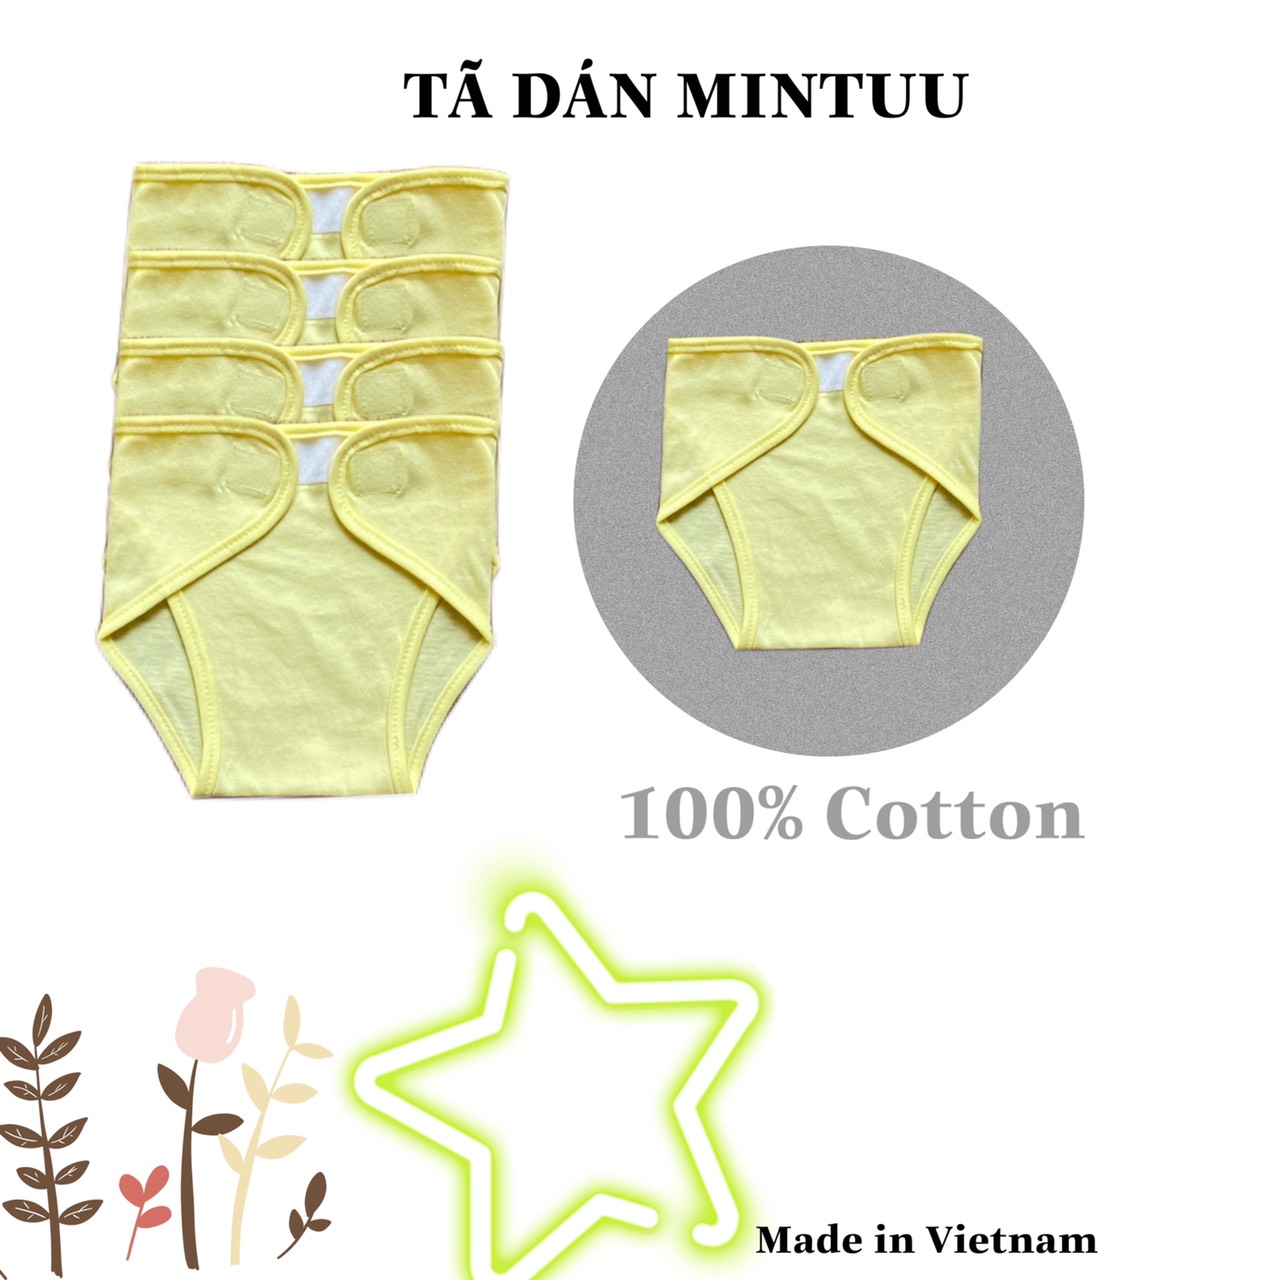 Set 5 tã dán sơ sinh màu, tã quần chất liệu vải 100% cotton, thương hiệu MINTUU - Thời trang và đồ dùng cho trẻ em - Hana’s kids